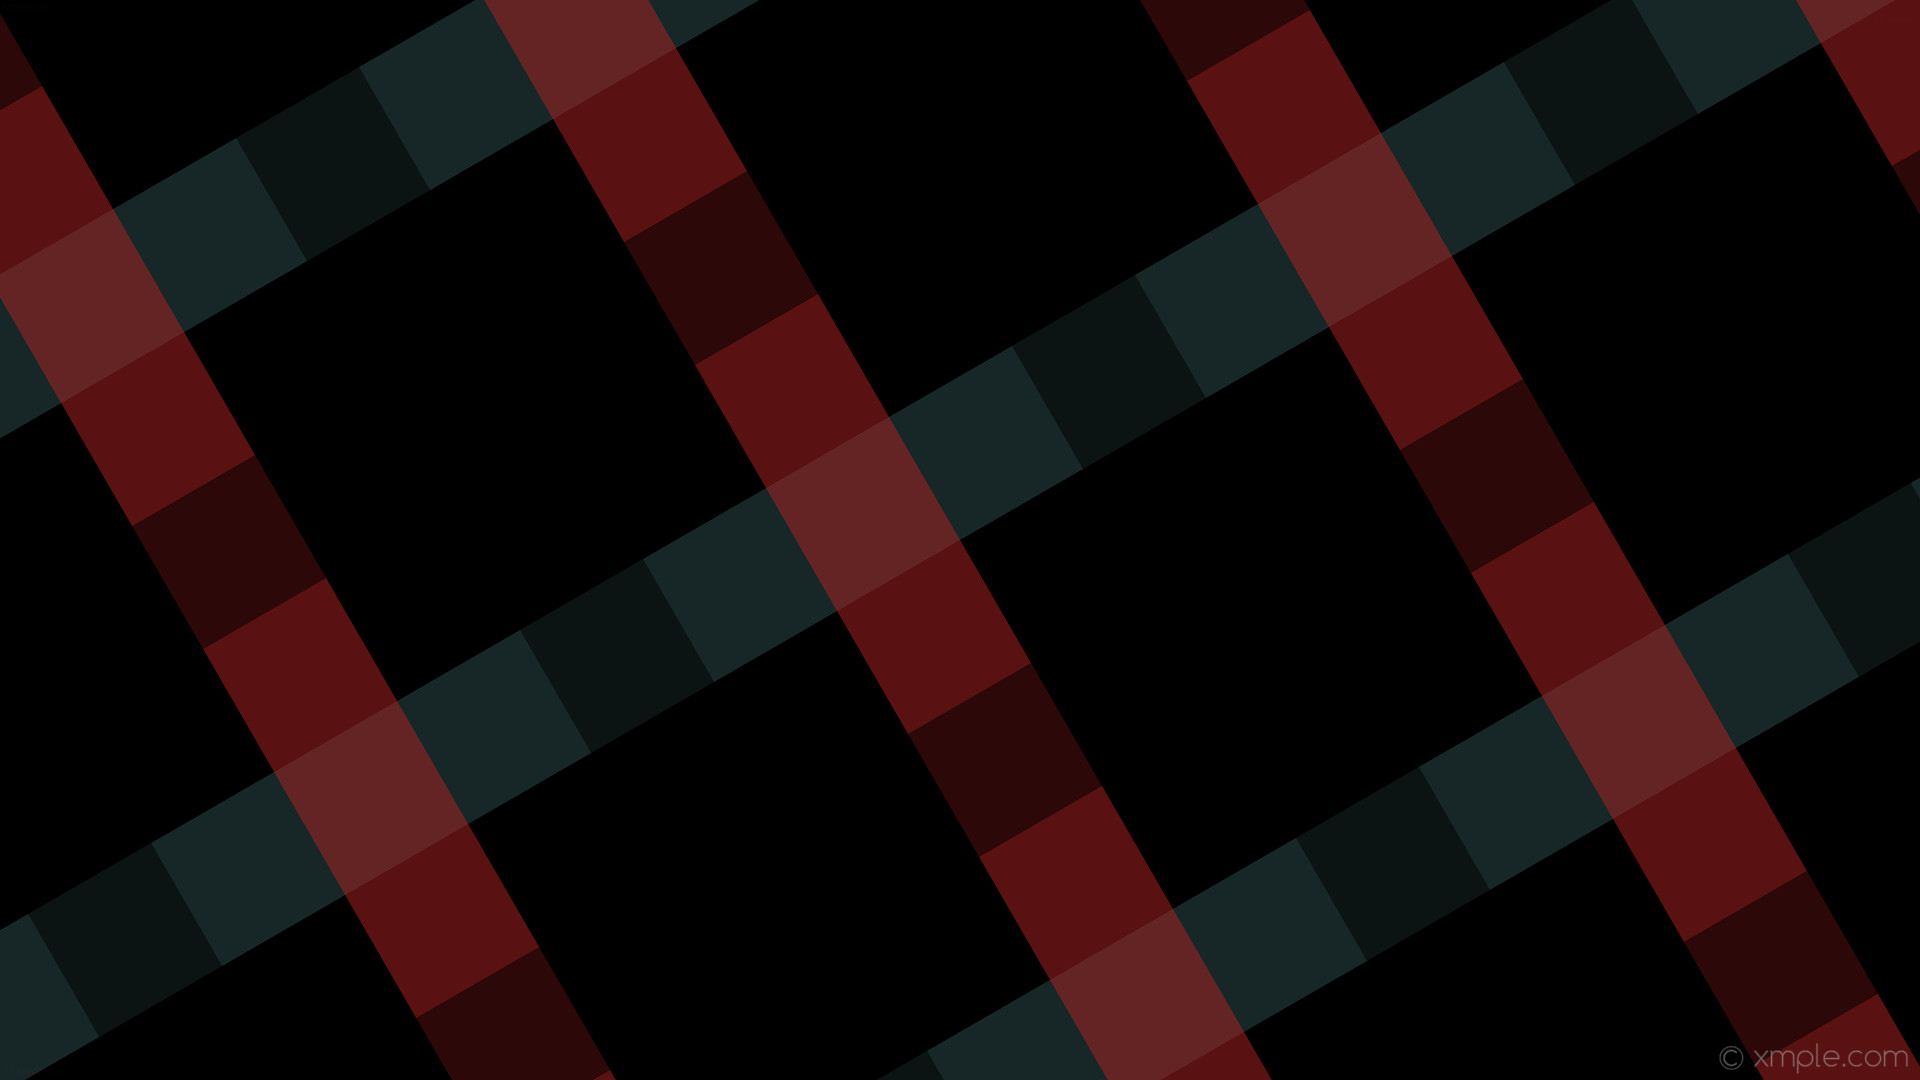 1920x1080 wallpaper quad gingham black striped grey red dark slate gray fire brick  #000000 #2f4f4f